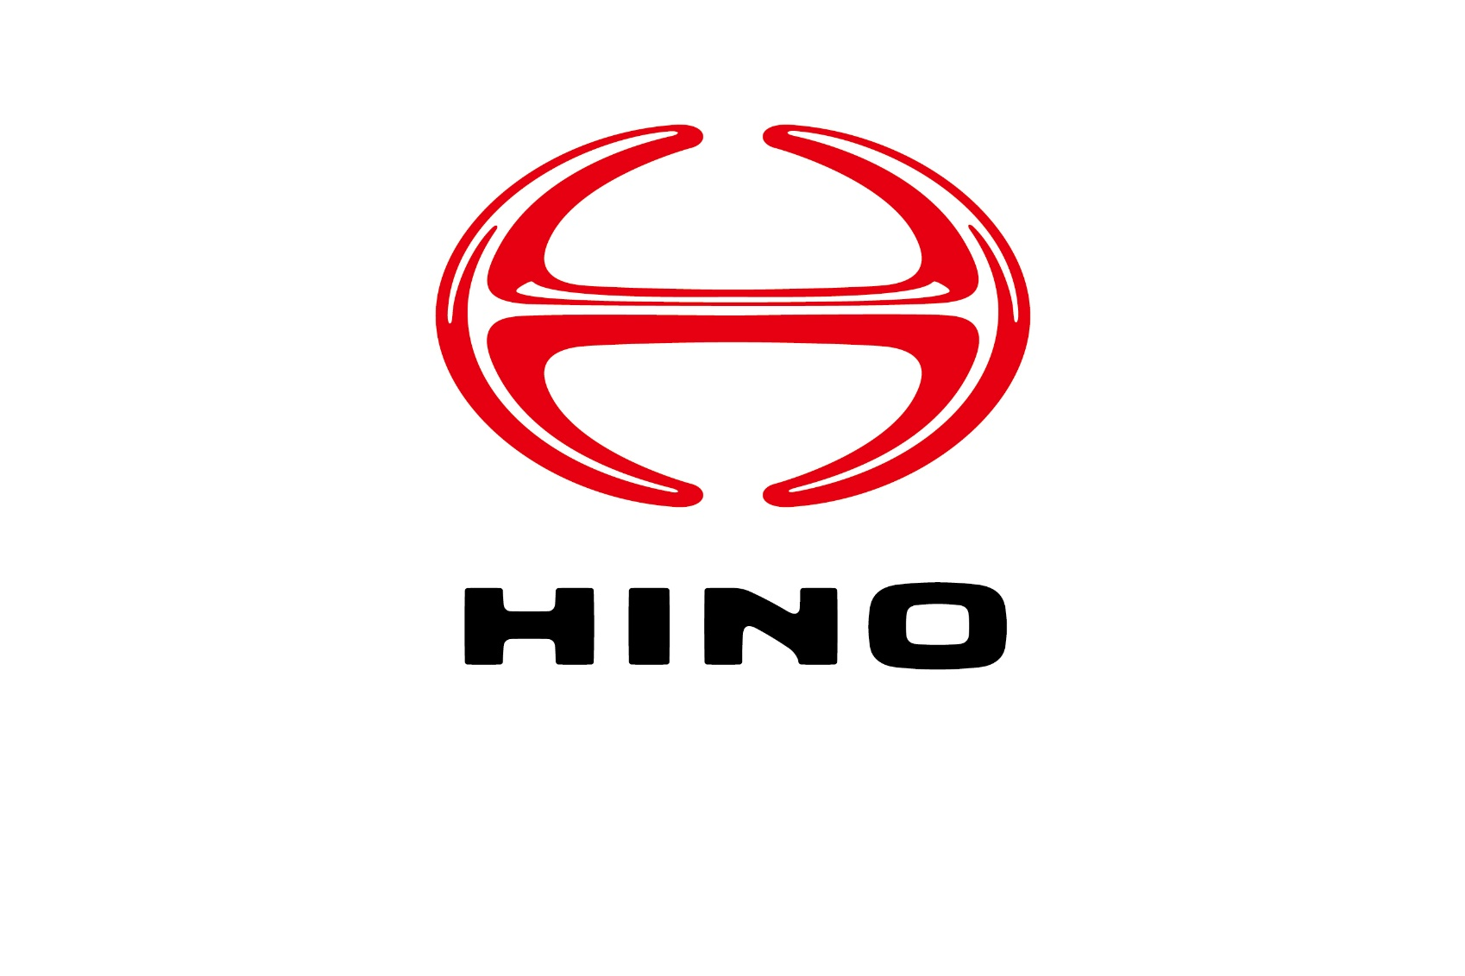 Hino's New Corporate Philosophy: The "HINO Way"